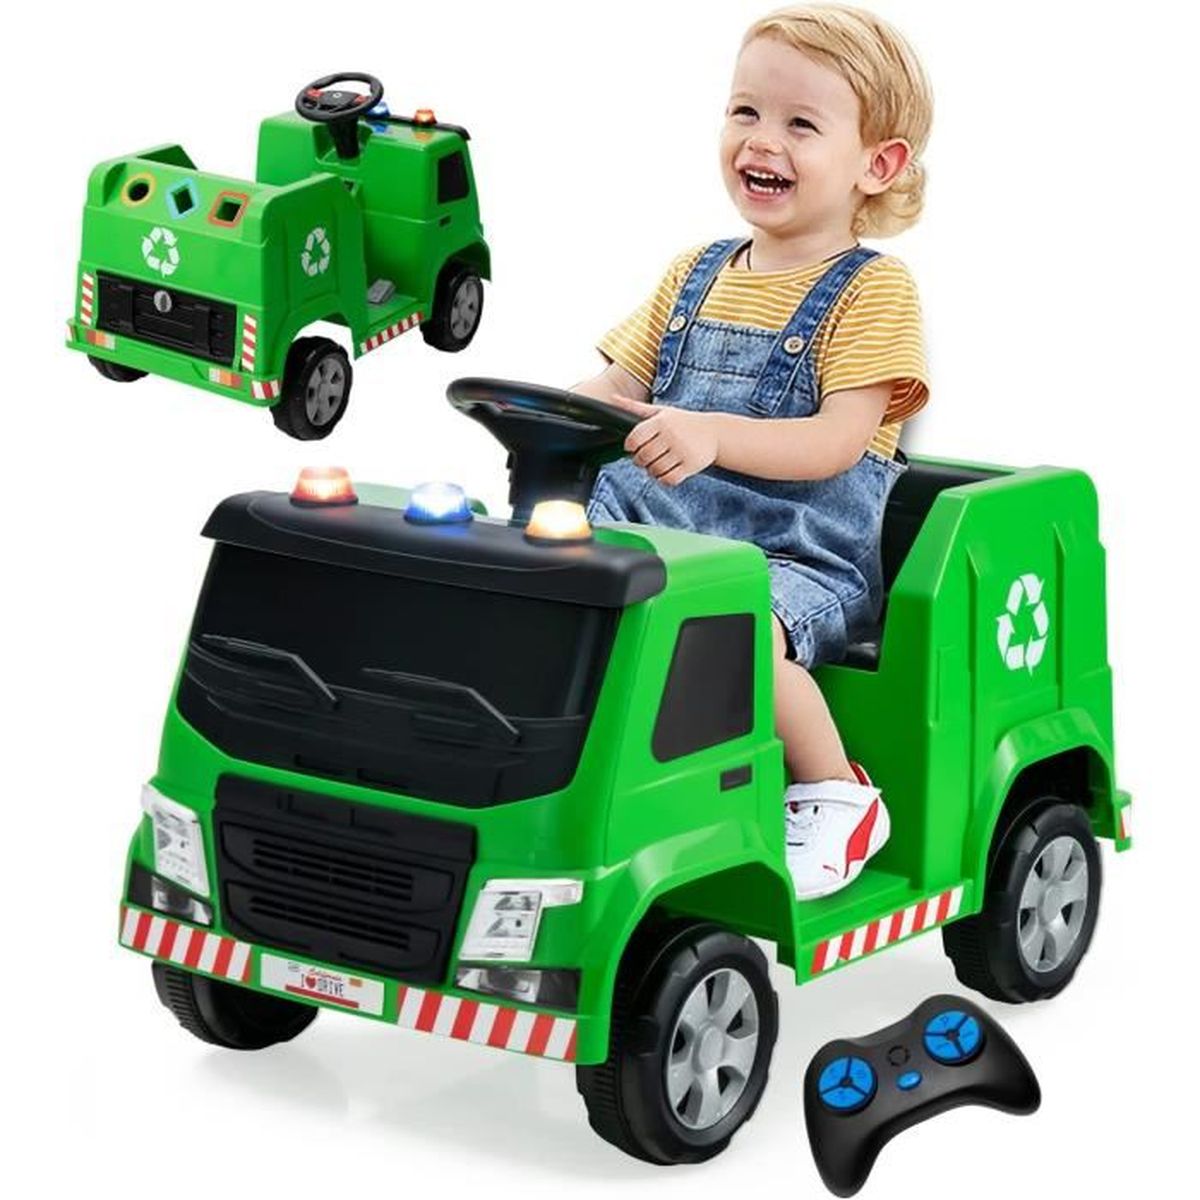 Tracteur électrique enfant - smx tractor vert  Smallmx - Dirt bike, Pit  bike, Quads, Minimoto